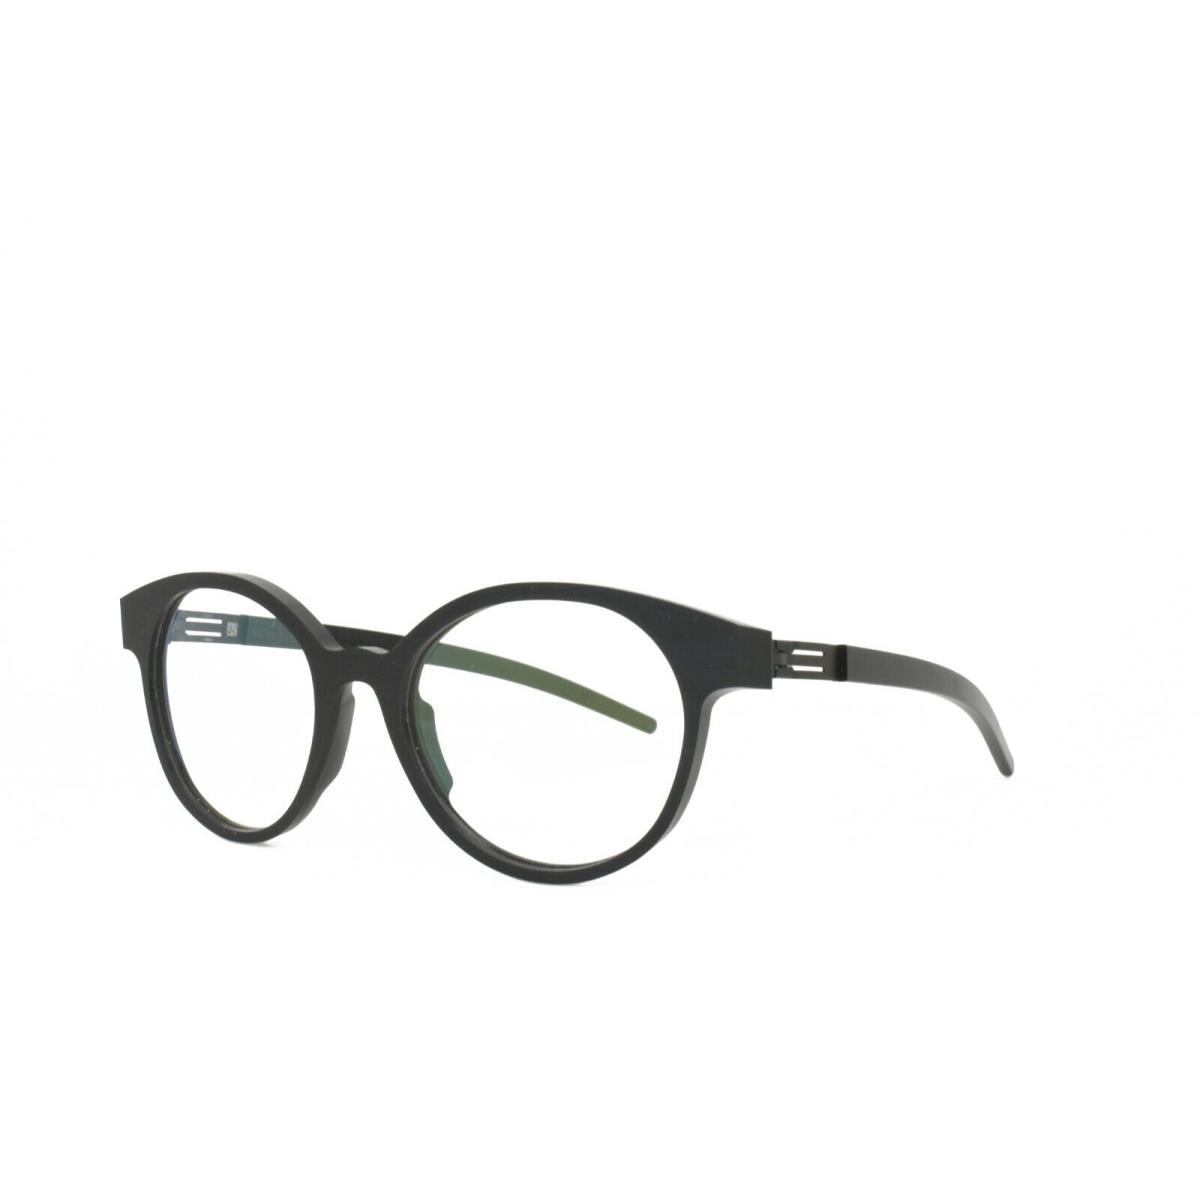 iC Berlin Eyeglasses Julia S. Black 51-20-145